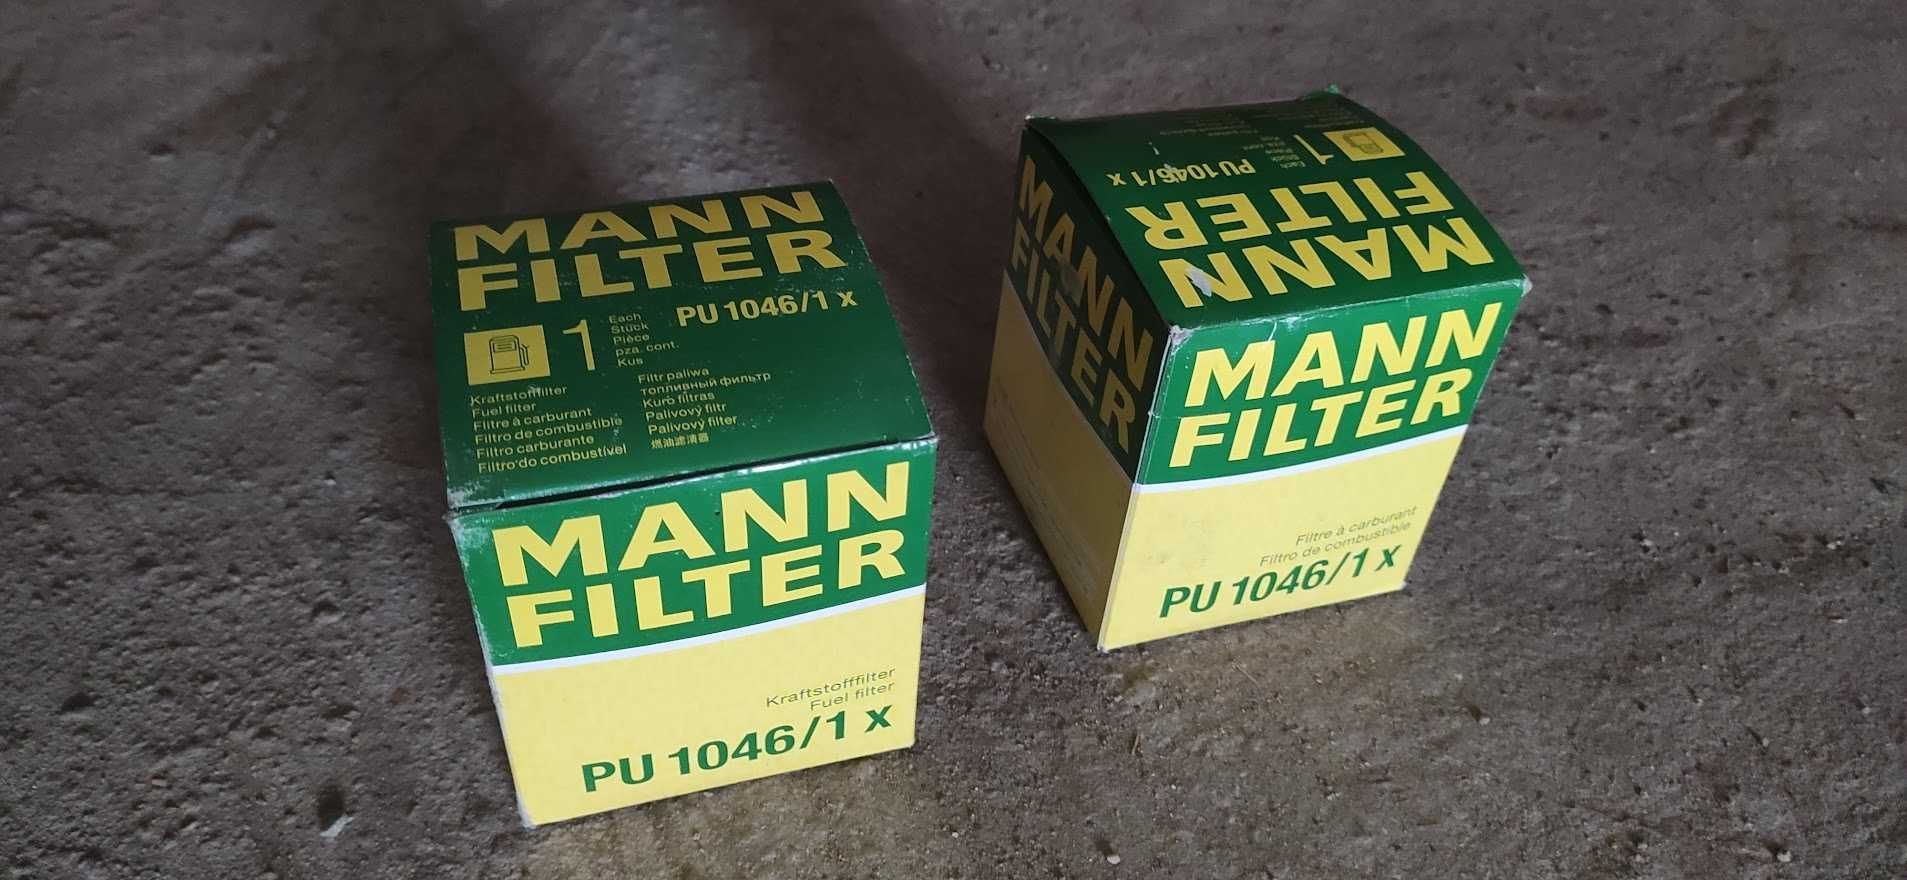 Фильтр топливный MANN-FILTER PU 1046/1 X Mercedes Atego